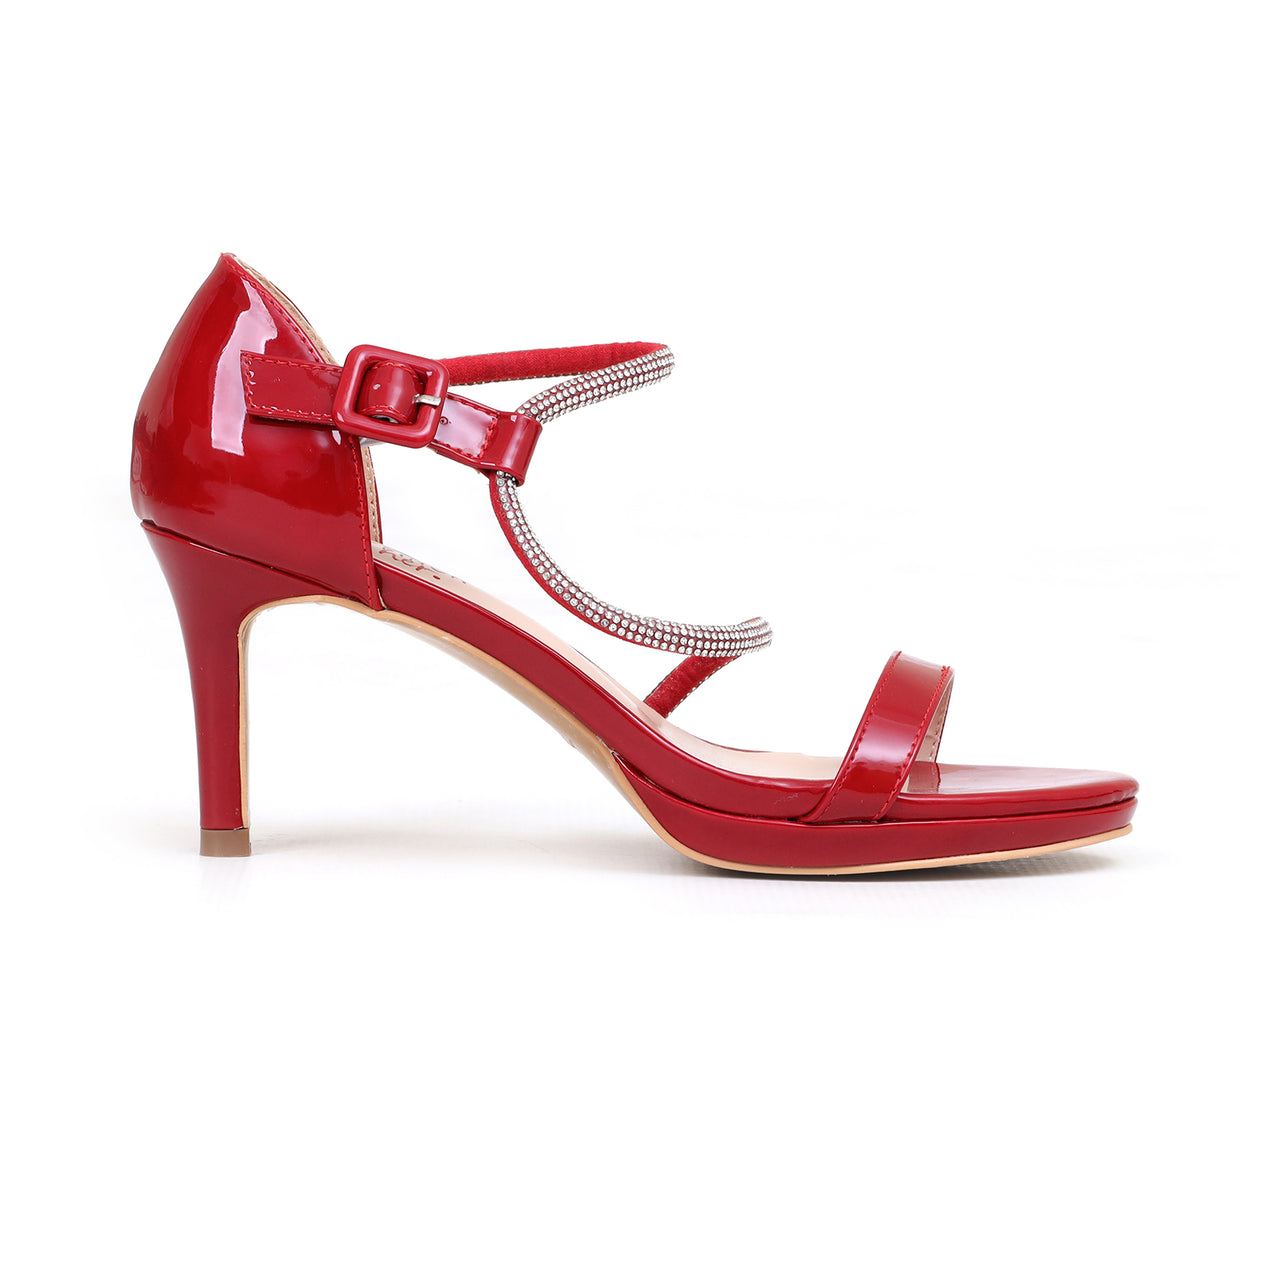 l-lf-0200053-fancy pointed heels